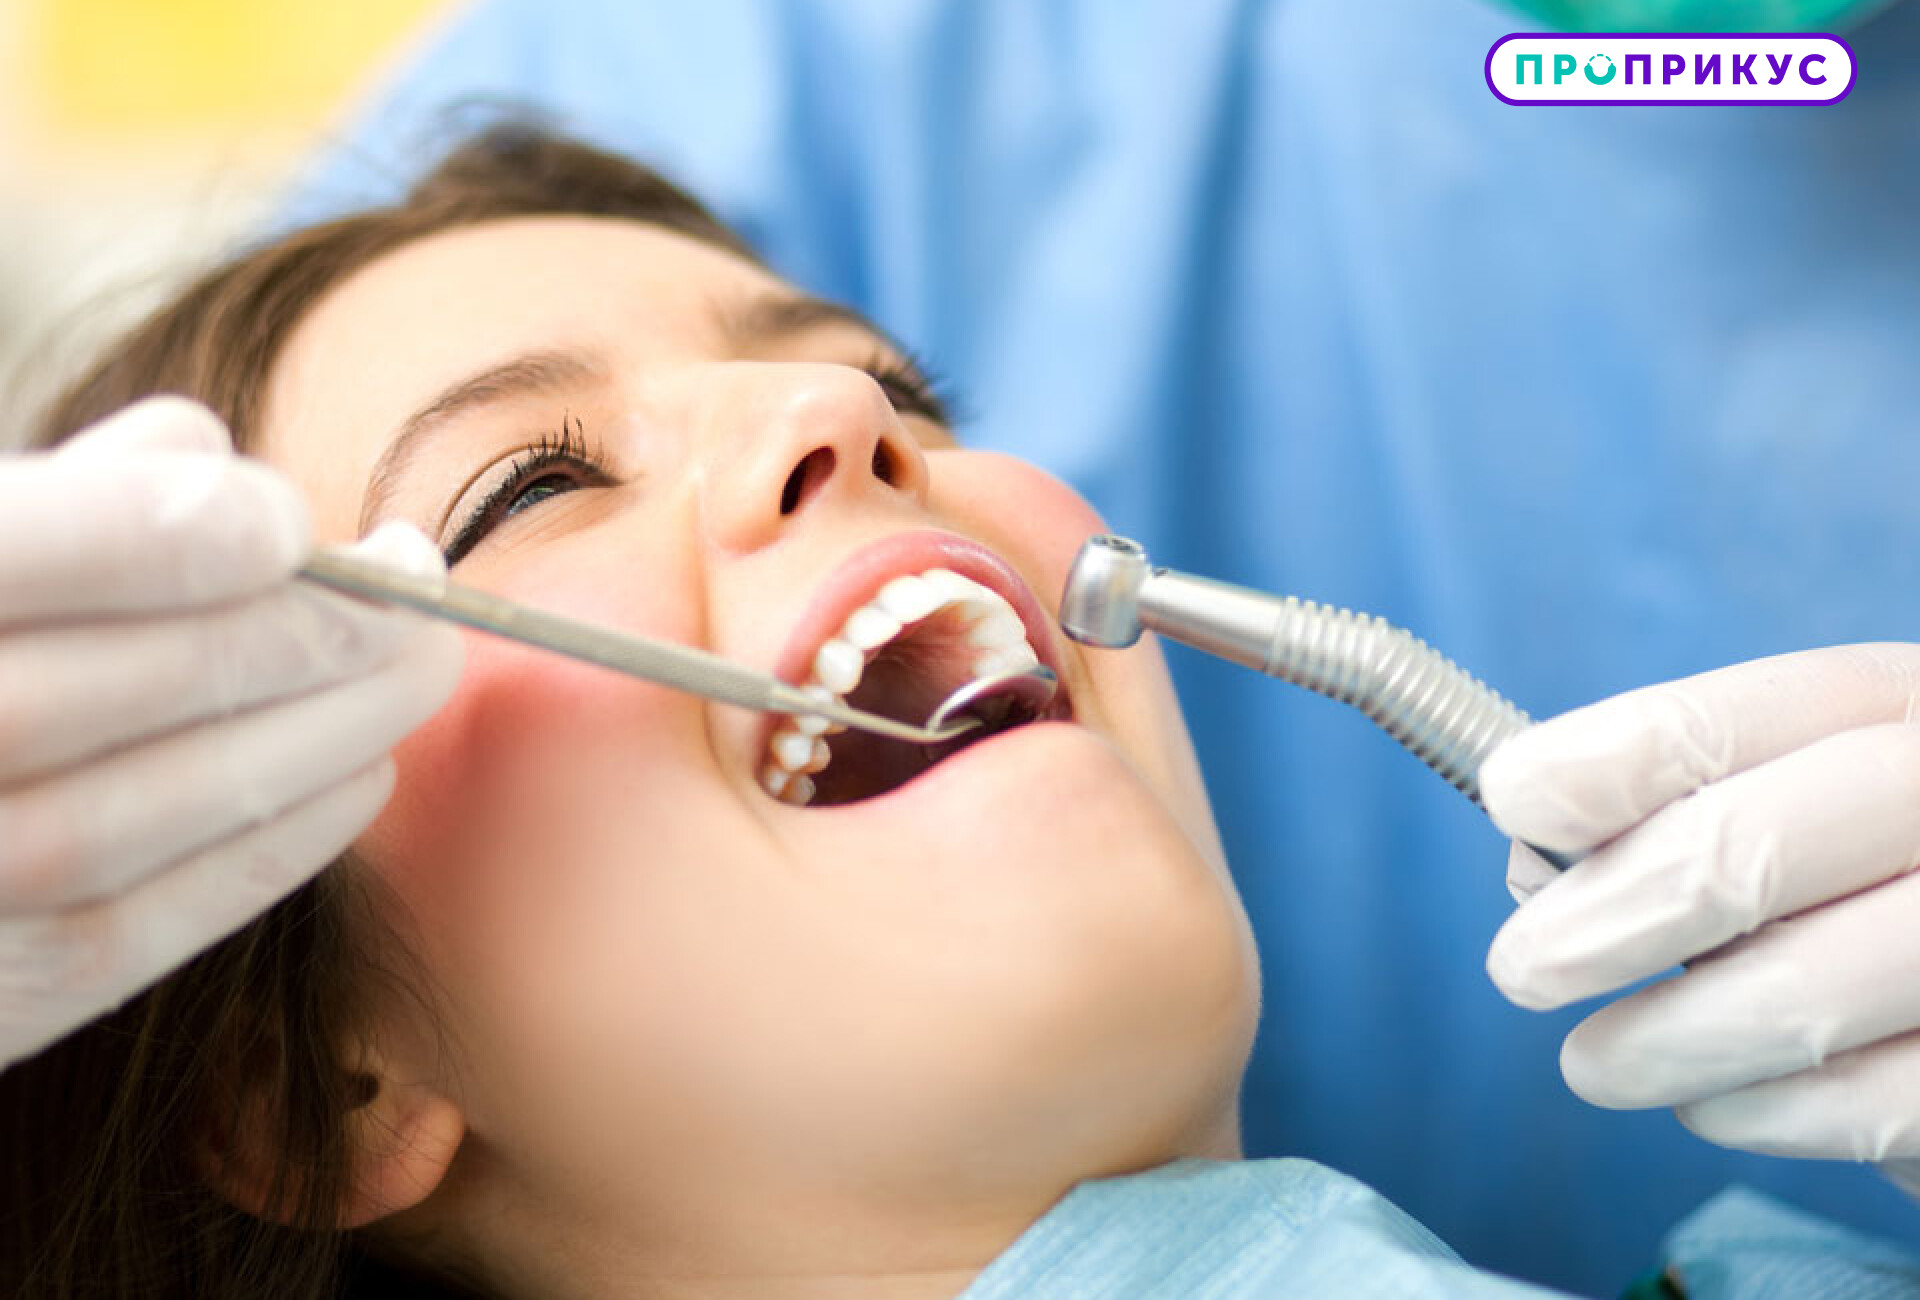 Современная анестезия в стоматологии – комфорт и спокойствие пациента